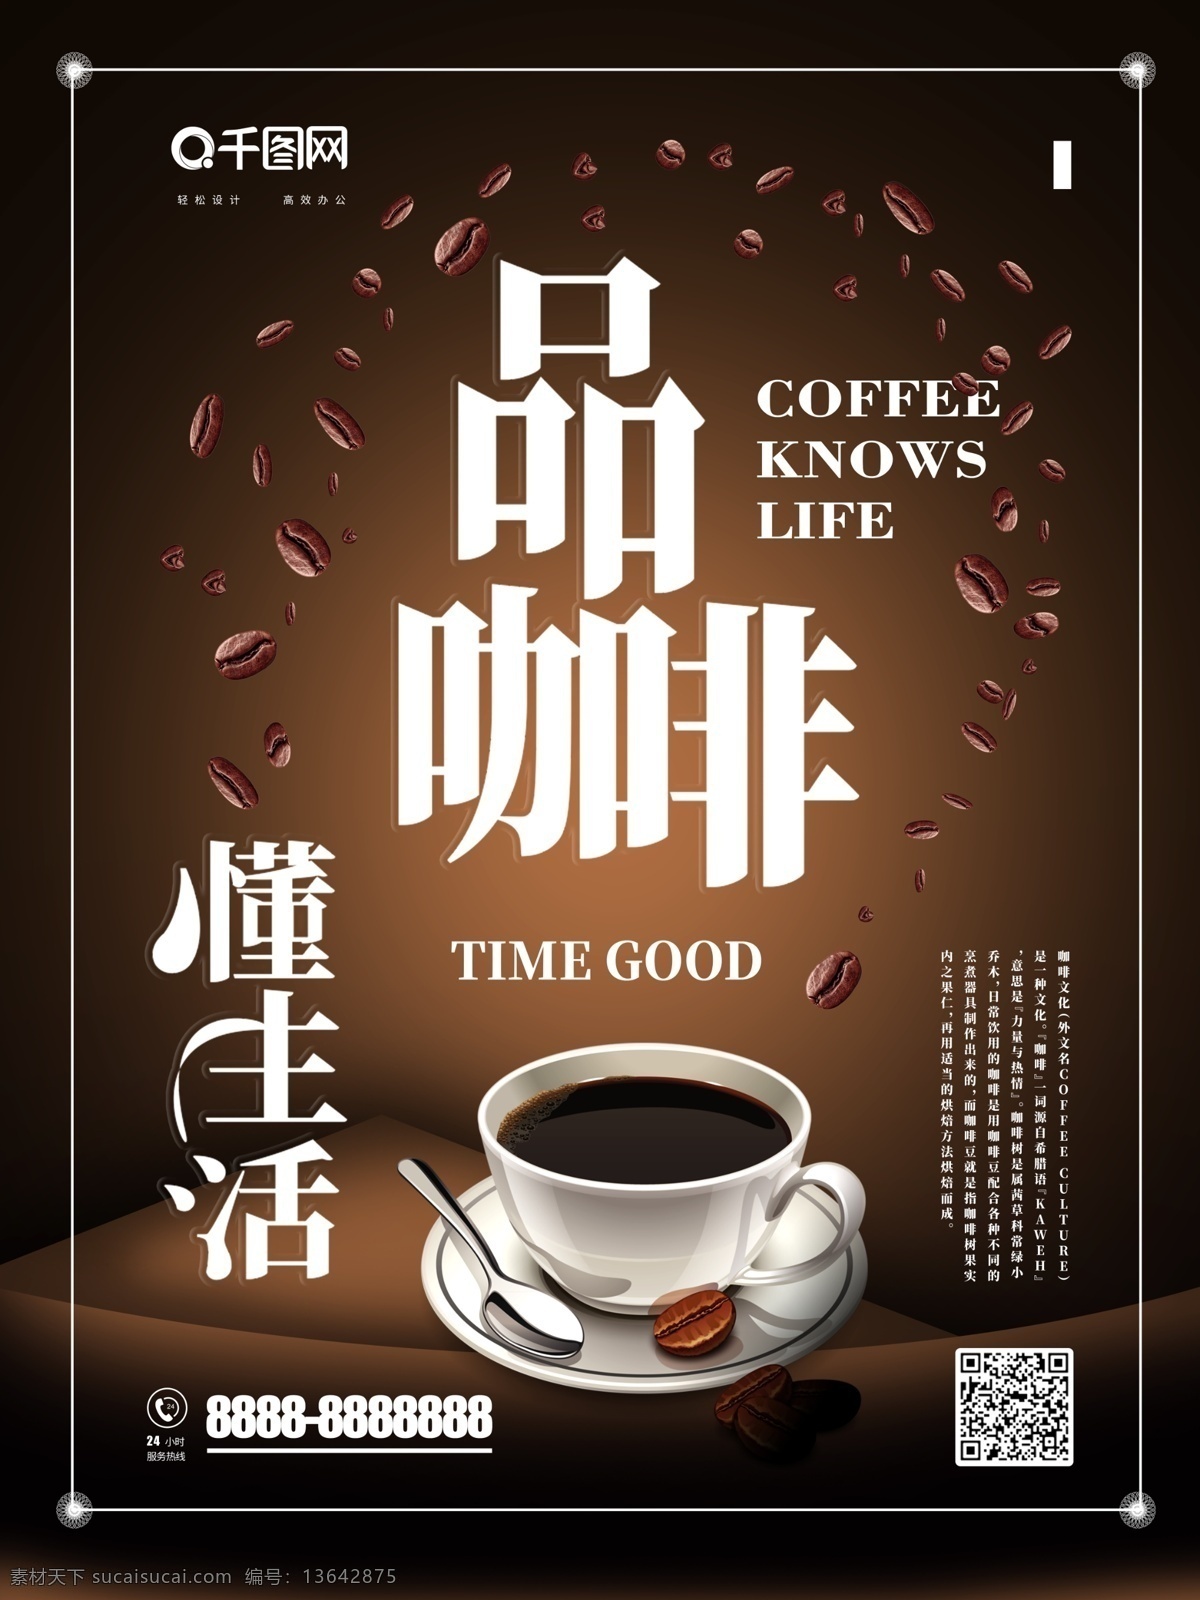 咖啡 高端 品质 意境 下午 茶 促销 流行 海报 咖啡海报 高端咖啡海报 品质咖啡 咖啡豆 下午茶 高端海报 美食海报 下午茶海报